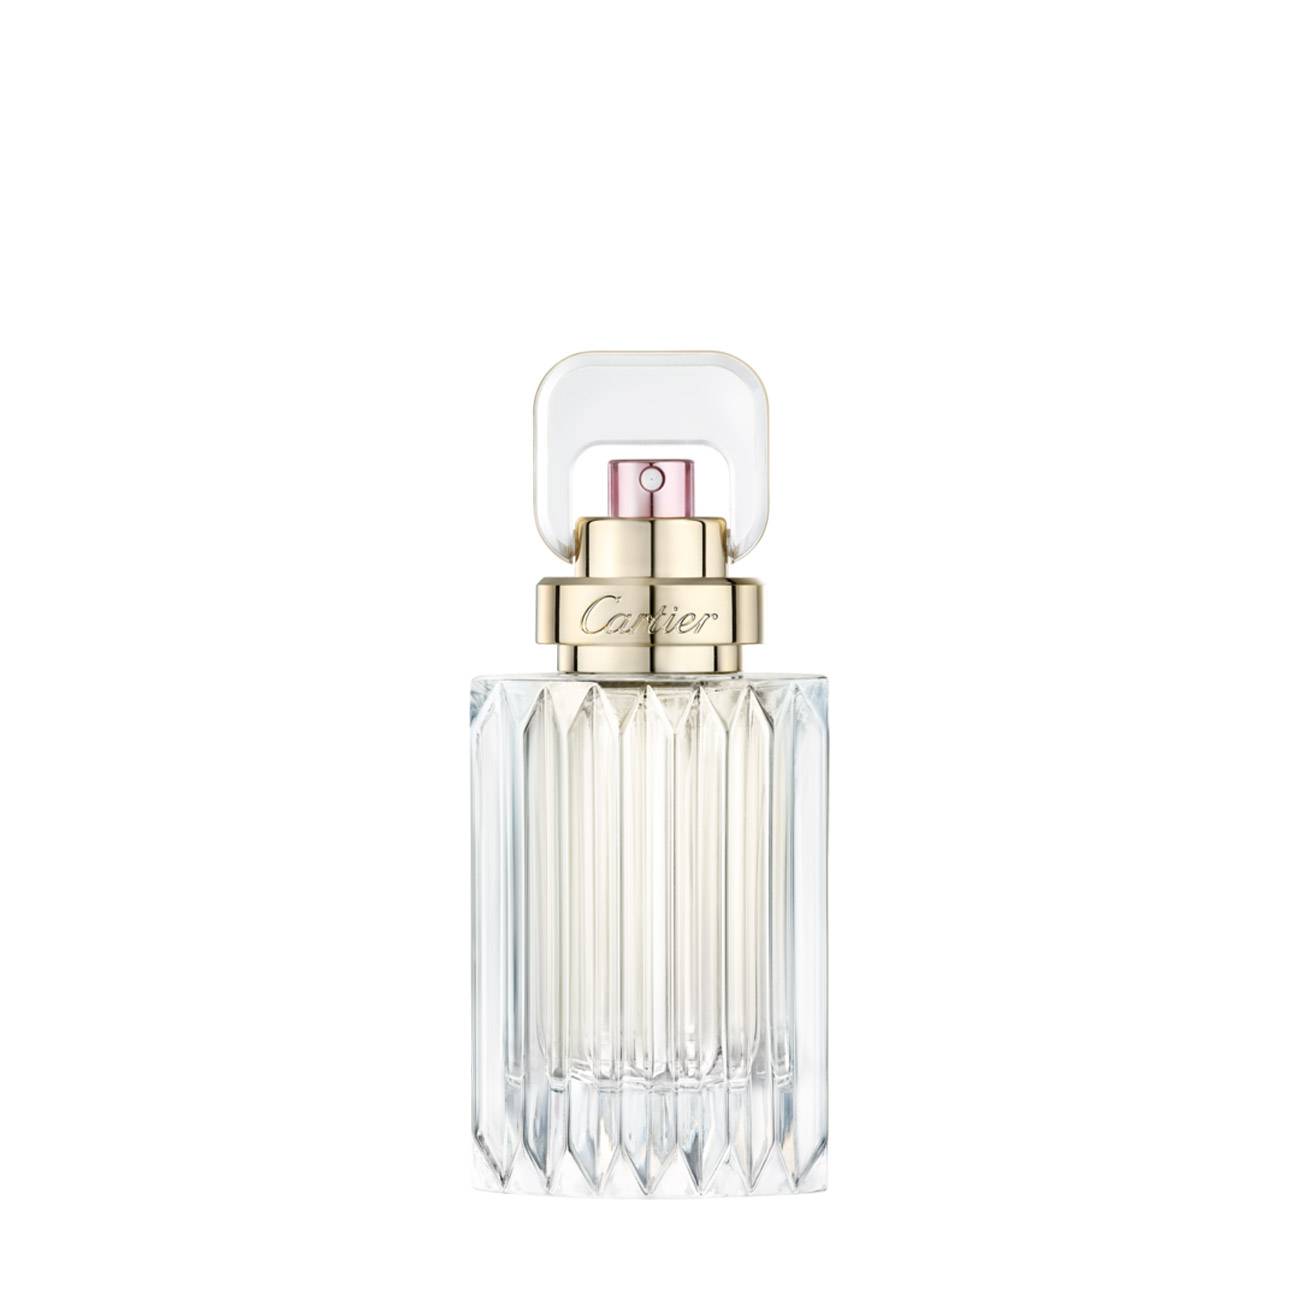 Apa de Parfum Cartier CARAT 50ml cu comanda online